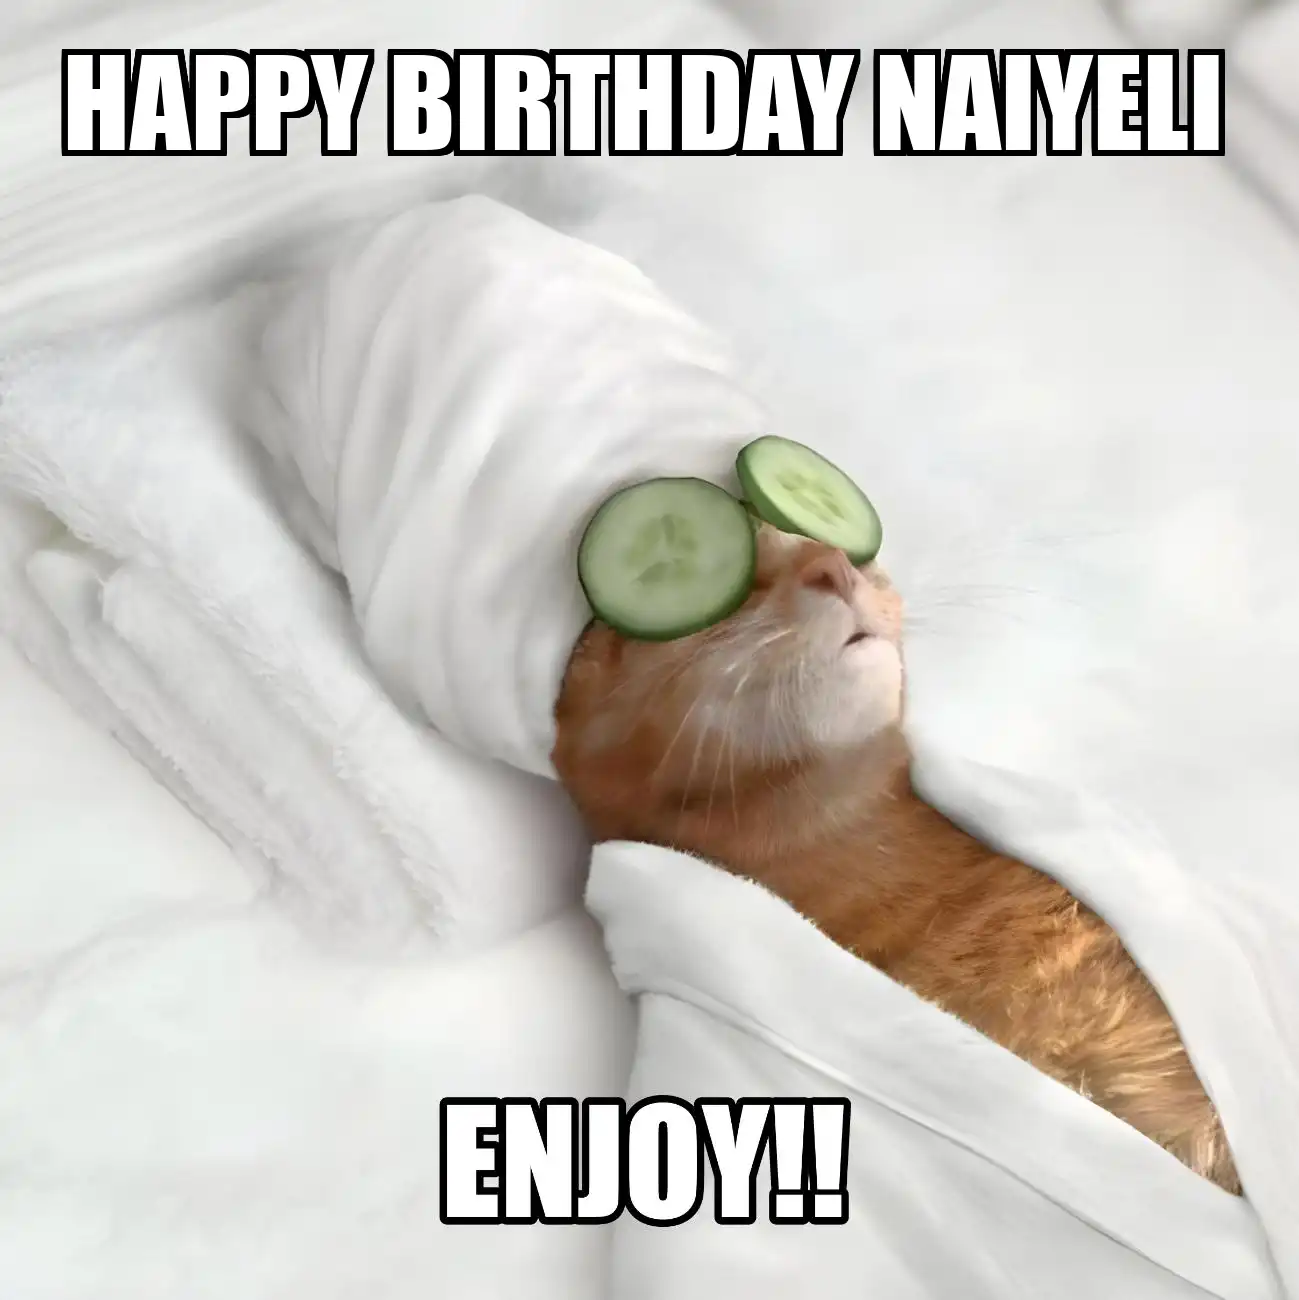 Happy Birthday Naiyeli Enjoy Cat Meme